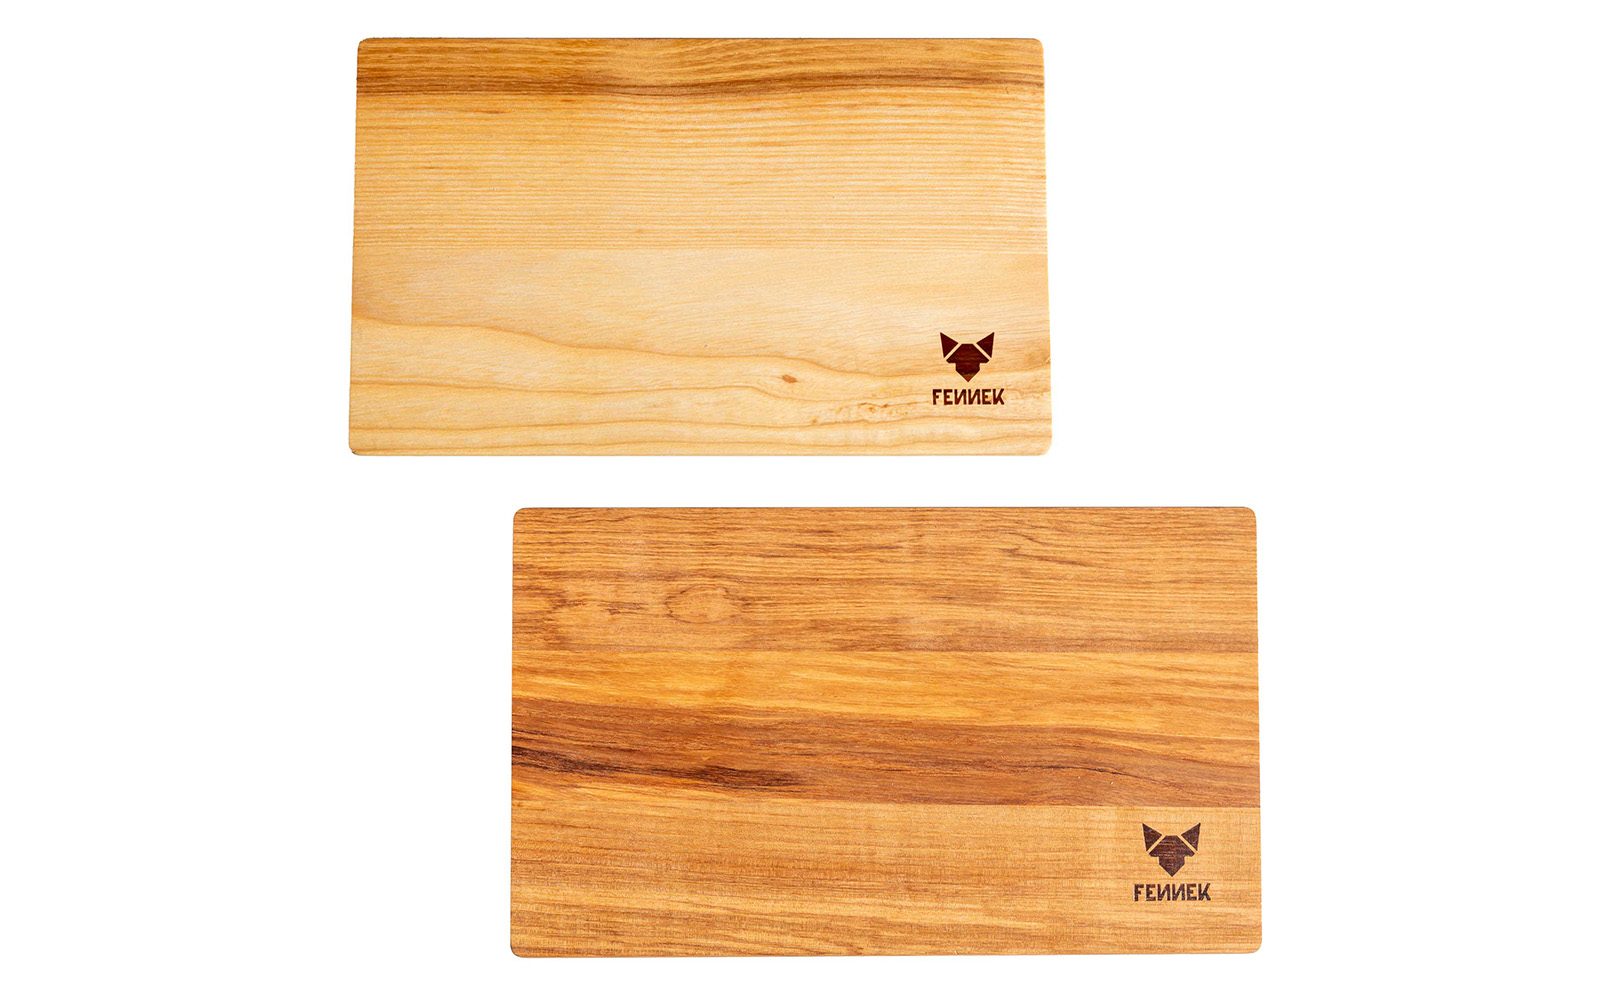 Zwei Holzbretter gleicher Größe mit unterschiedlicher Maserung von oben untereinander leicht versetzt abgebildet